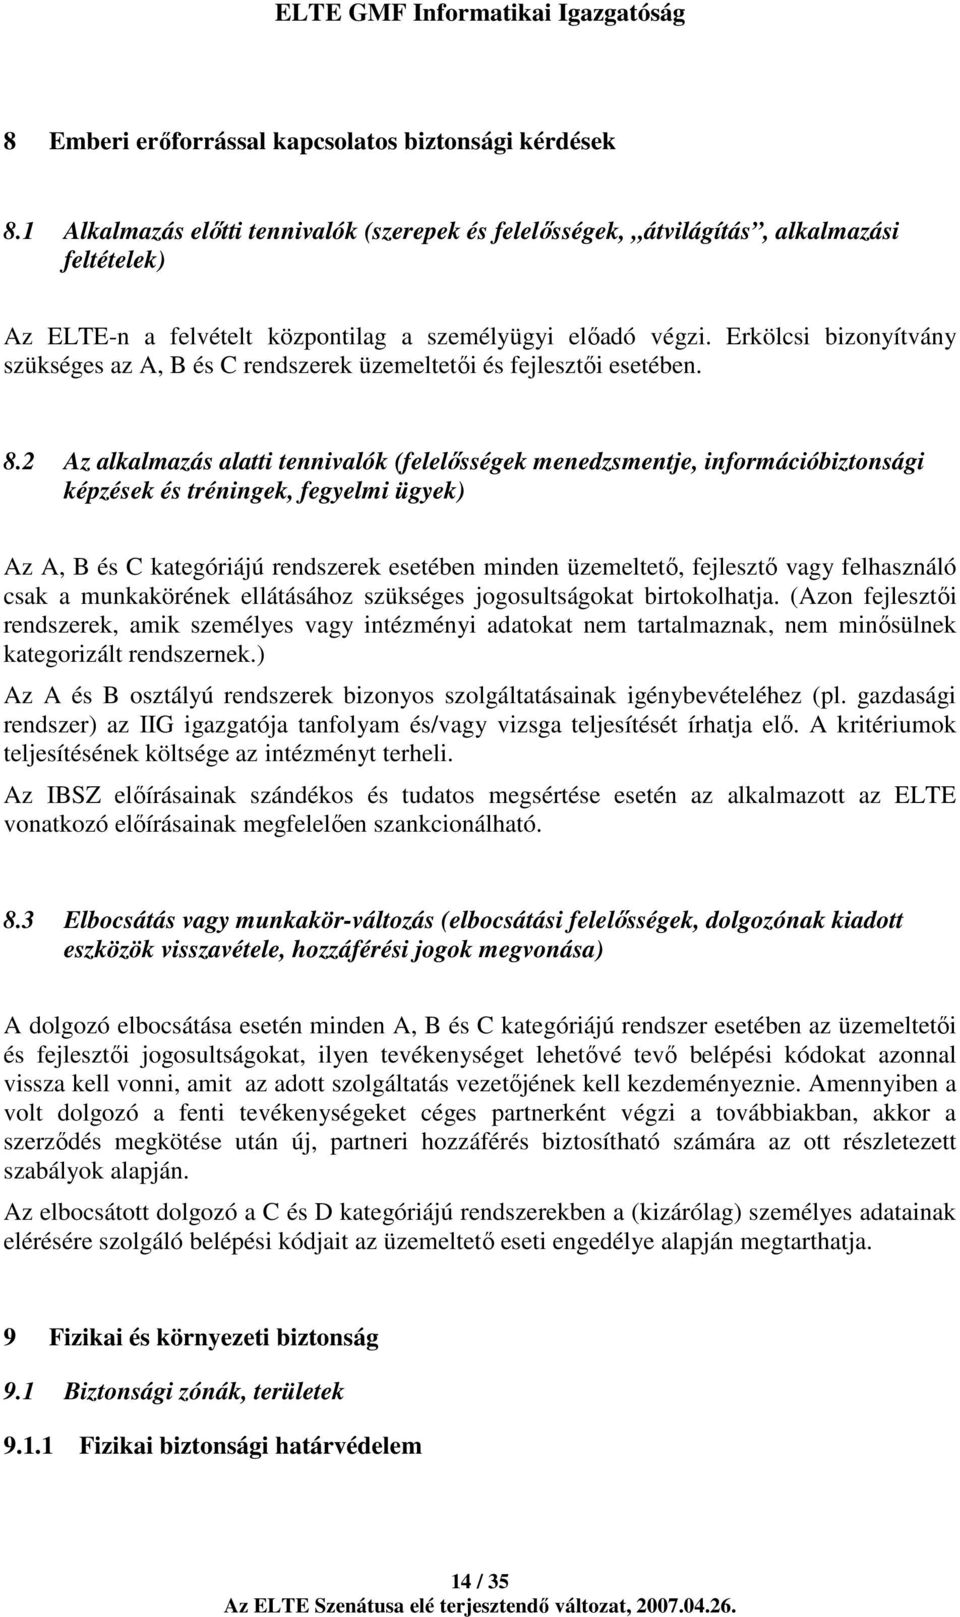 Erkölcsi bizonyítvány szükséges az A, B és C rendszerek üzemeltetıi és fejlesztıi esetében. 8.